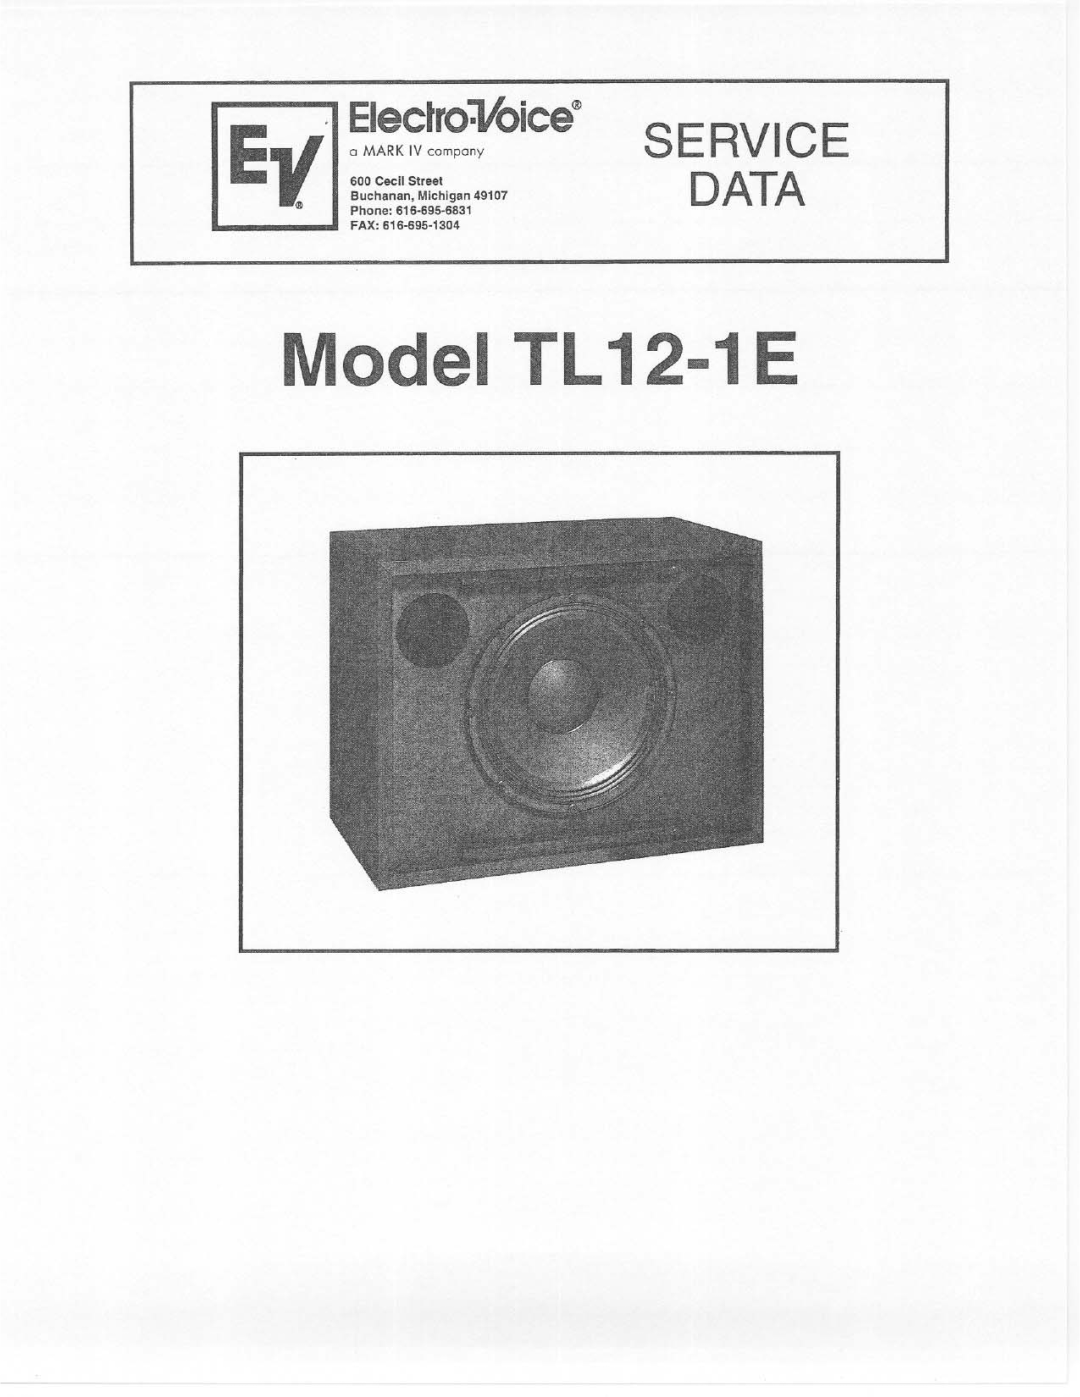 Electro-Voice TL12-1E manual 